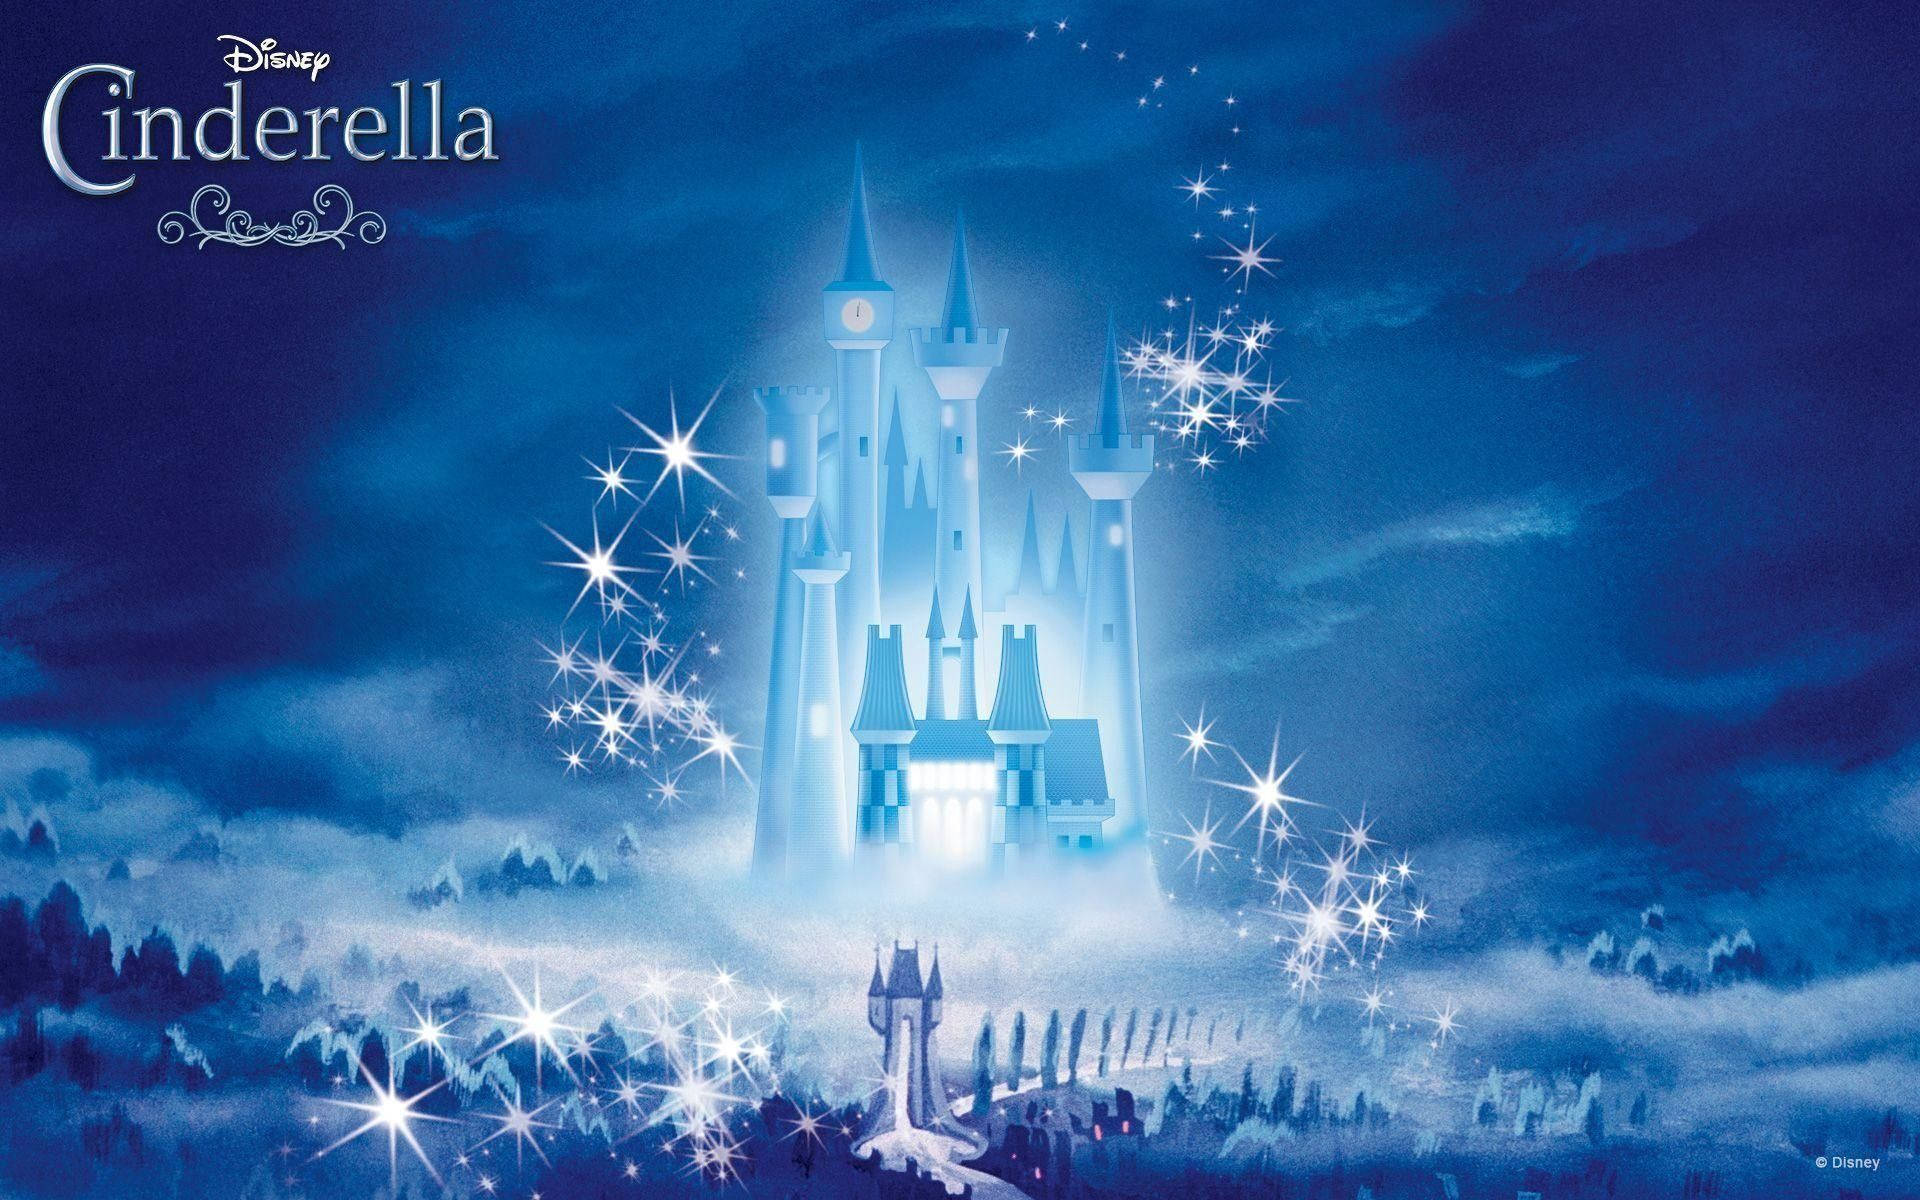 Cinderella's Enchanted Castle